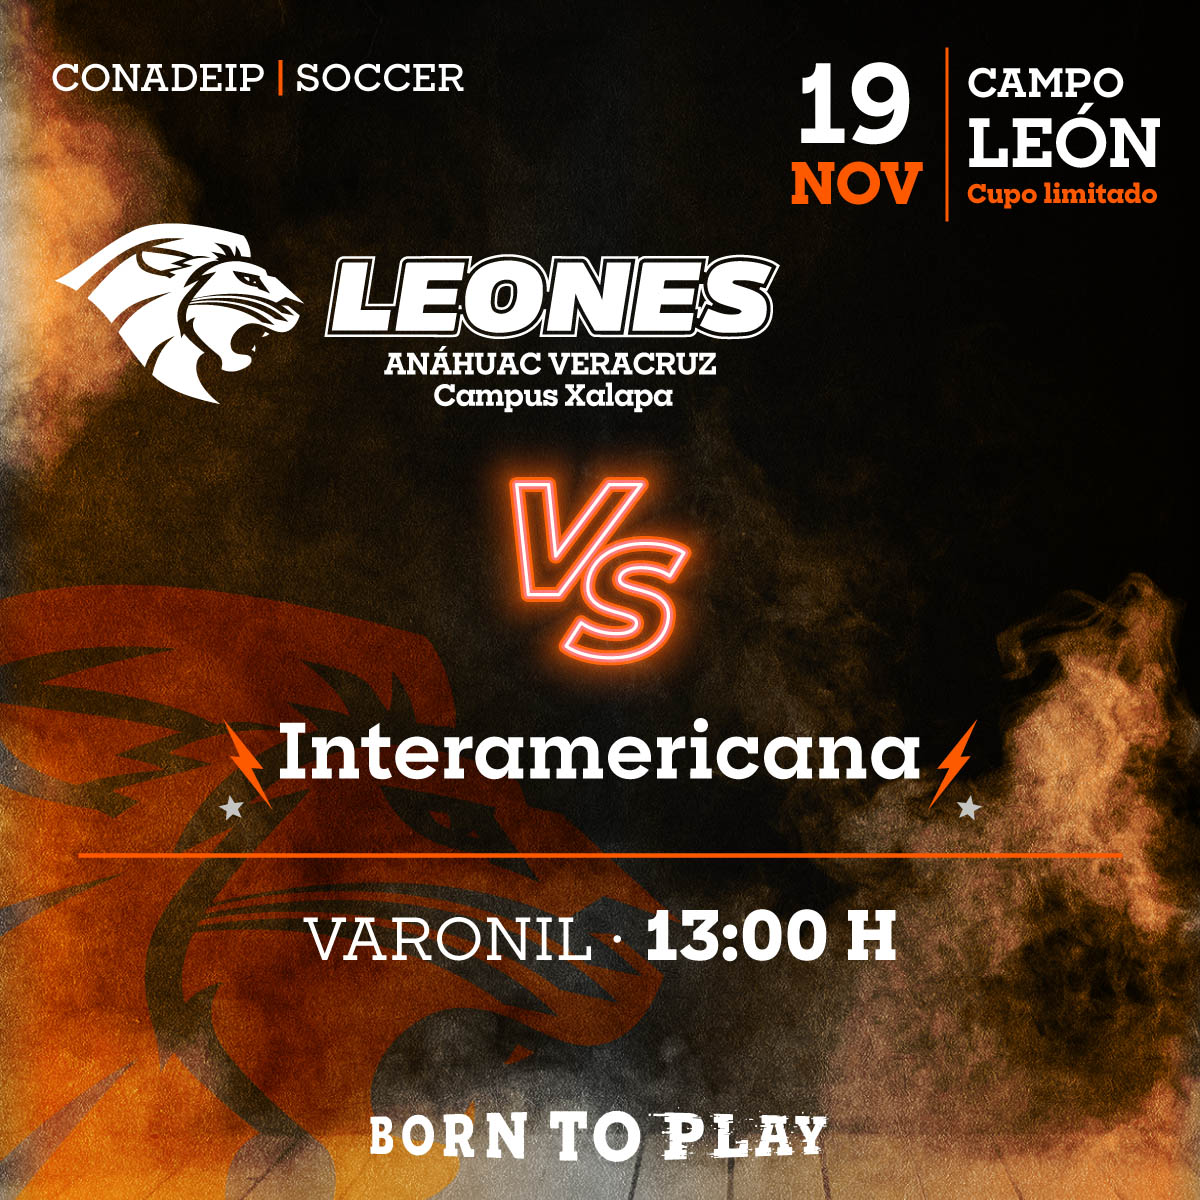 Soccer Varonil: Leones vs Interamericana